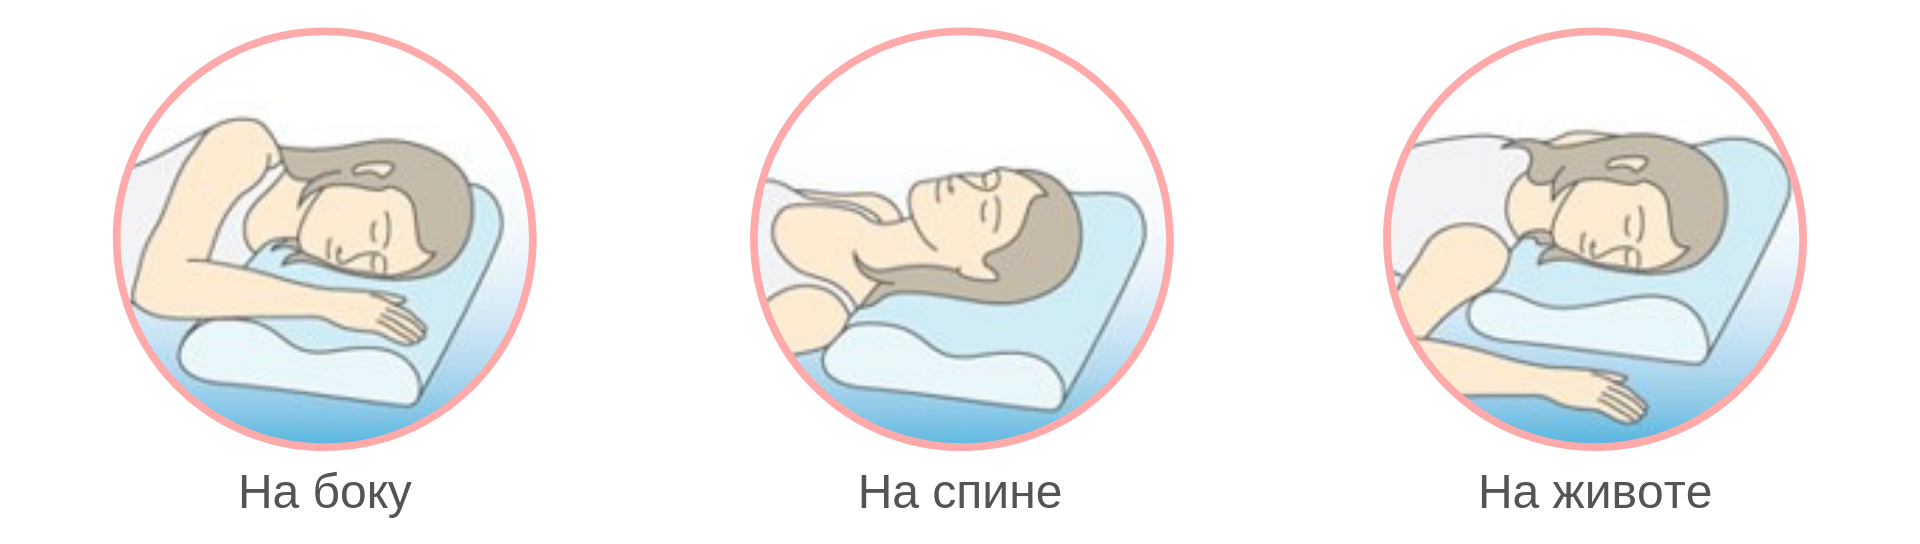 Ортопедическая подушка иконка. Как правильно спать на ортопедической подушке. Ортопедическая подушка инфографика. Как правильно чпать на ортопедическлй пожцшке. Как правильно спиш